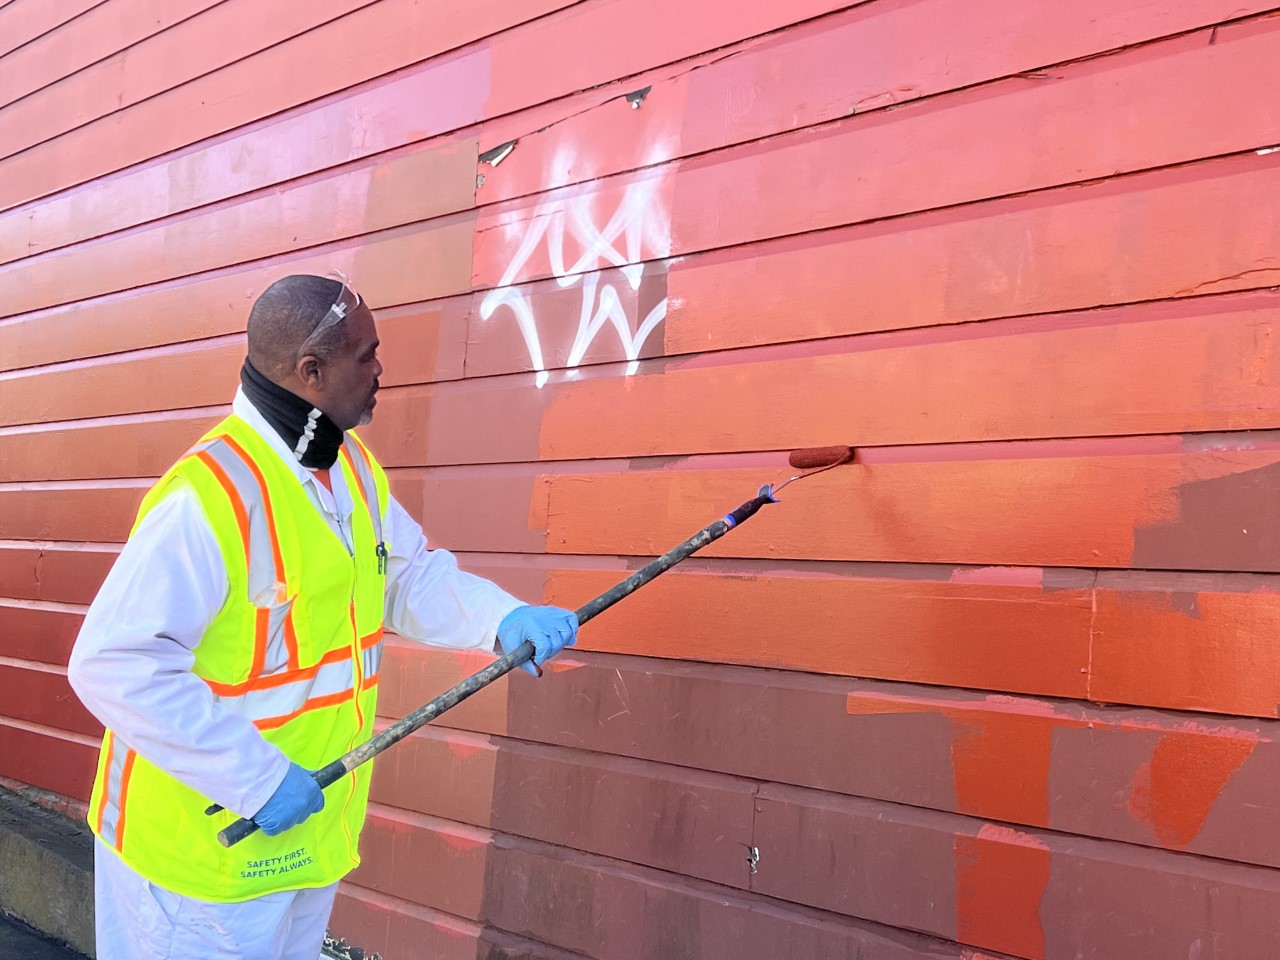 Staff painting out graffiti